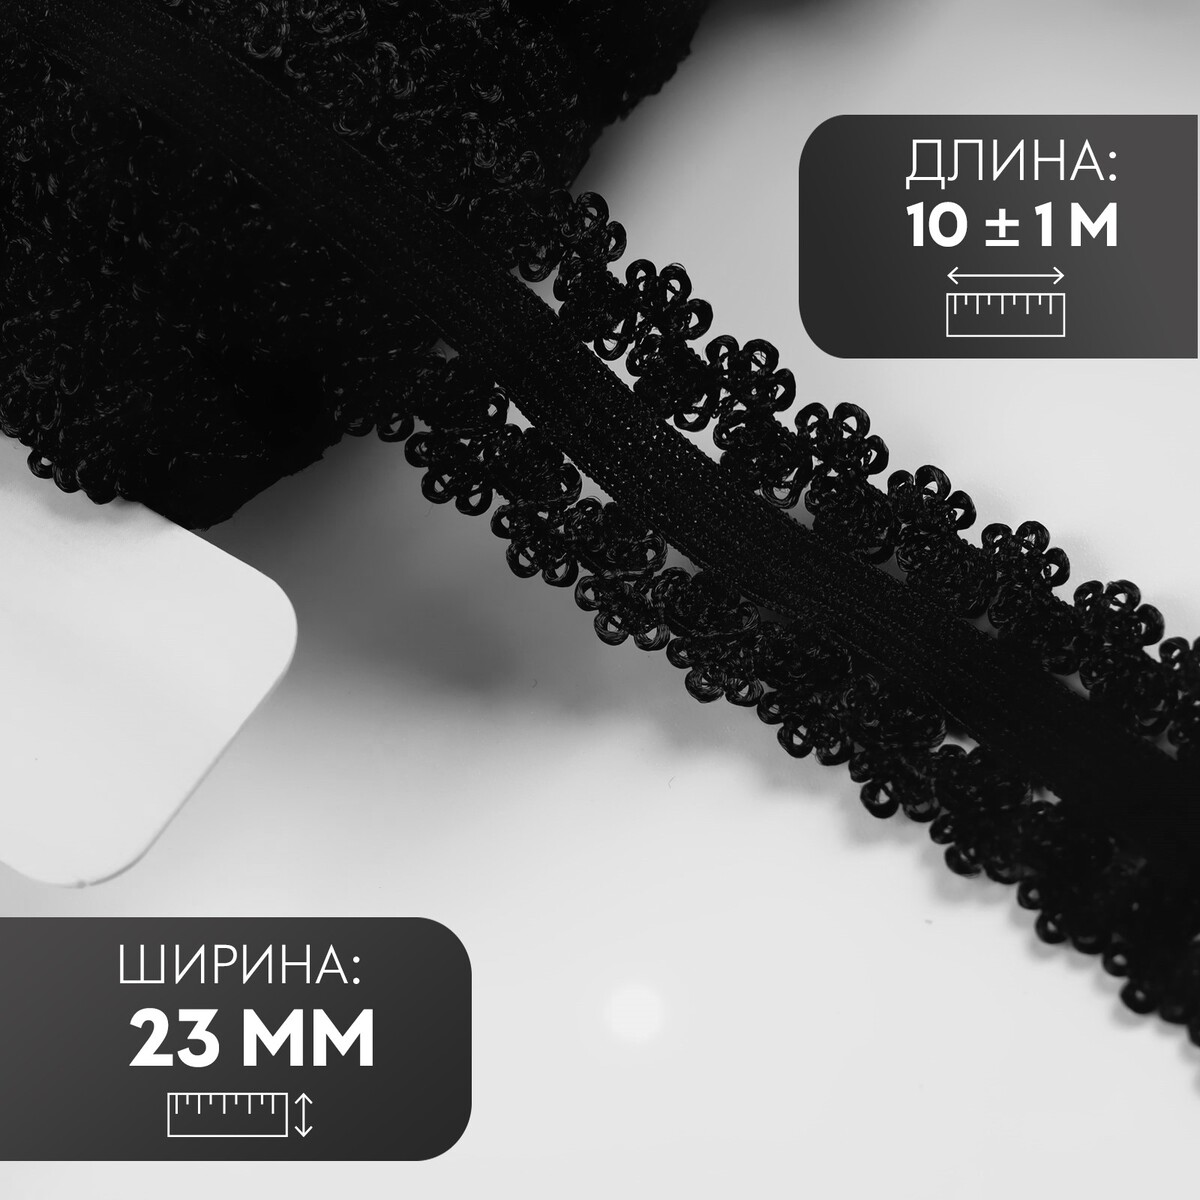 Резинка ажурная, 23 мм, 10 ± 1 м, цвет черный